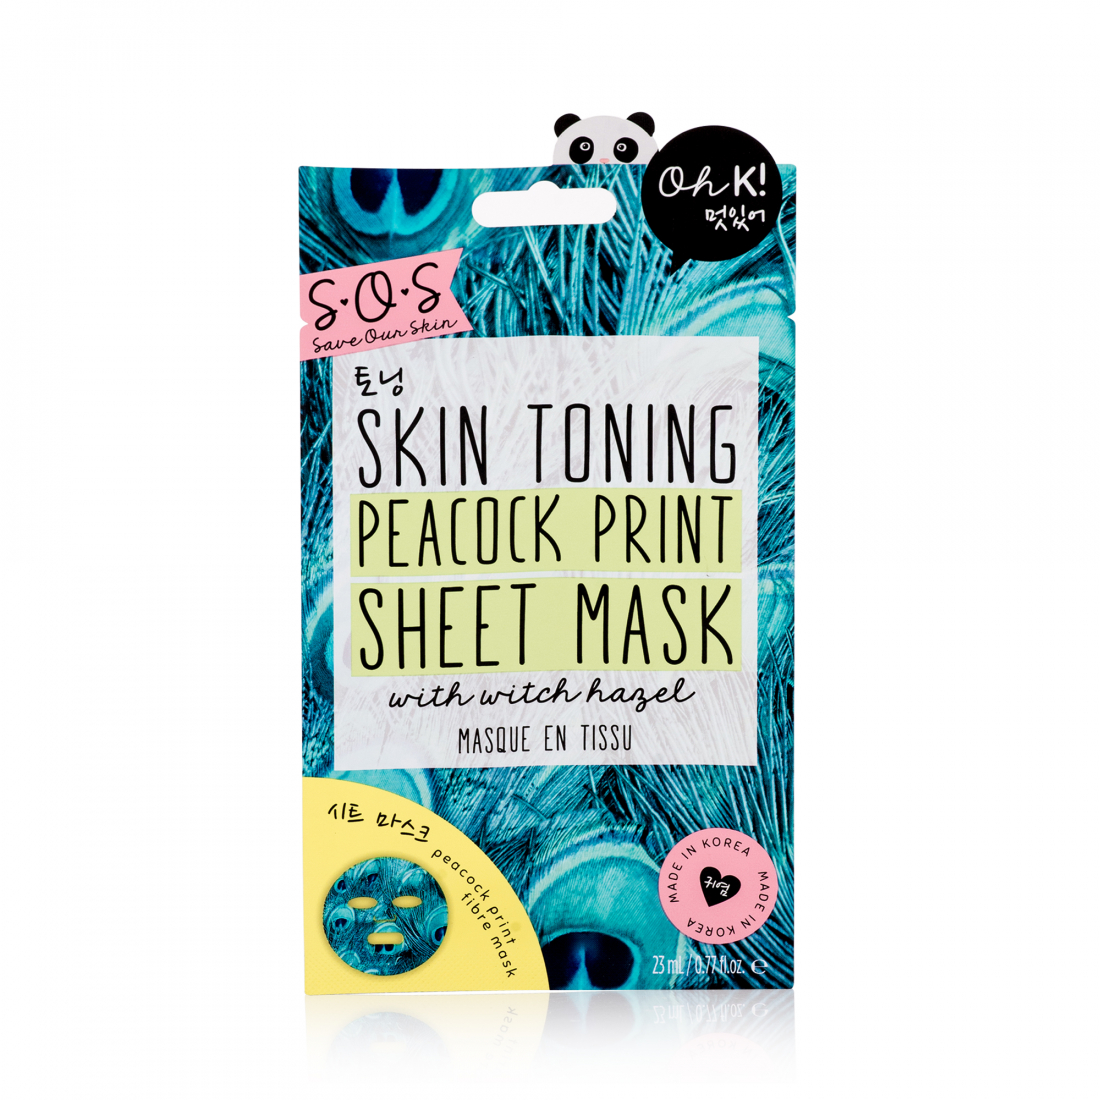 Masque visage en tissu 'SOS Skin Toning Peacock Print' - 23 ml